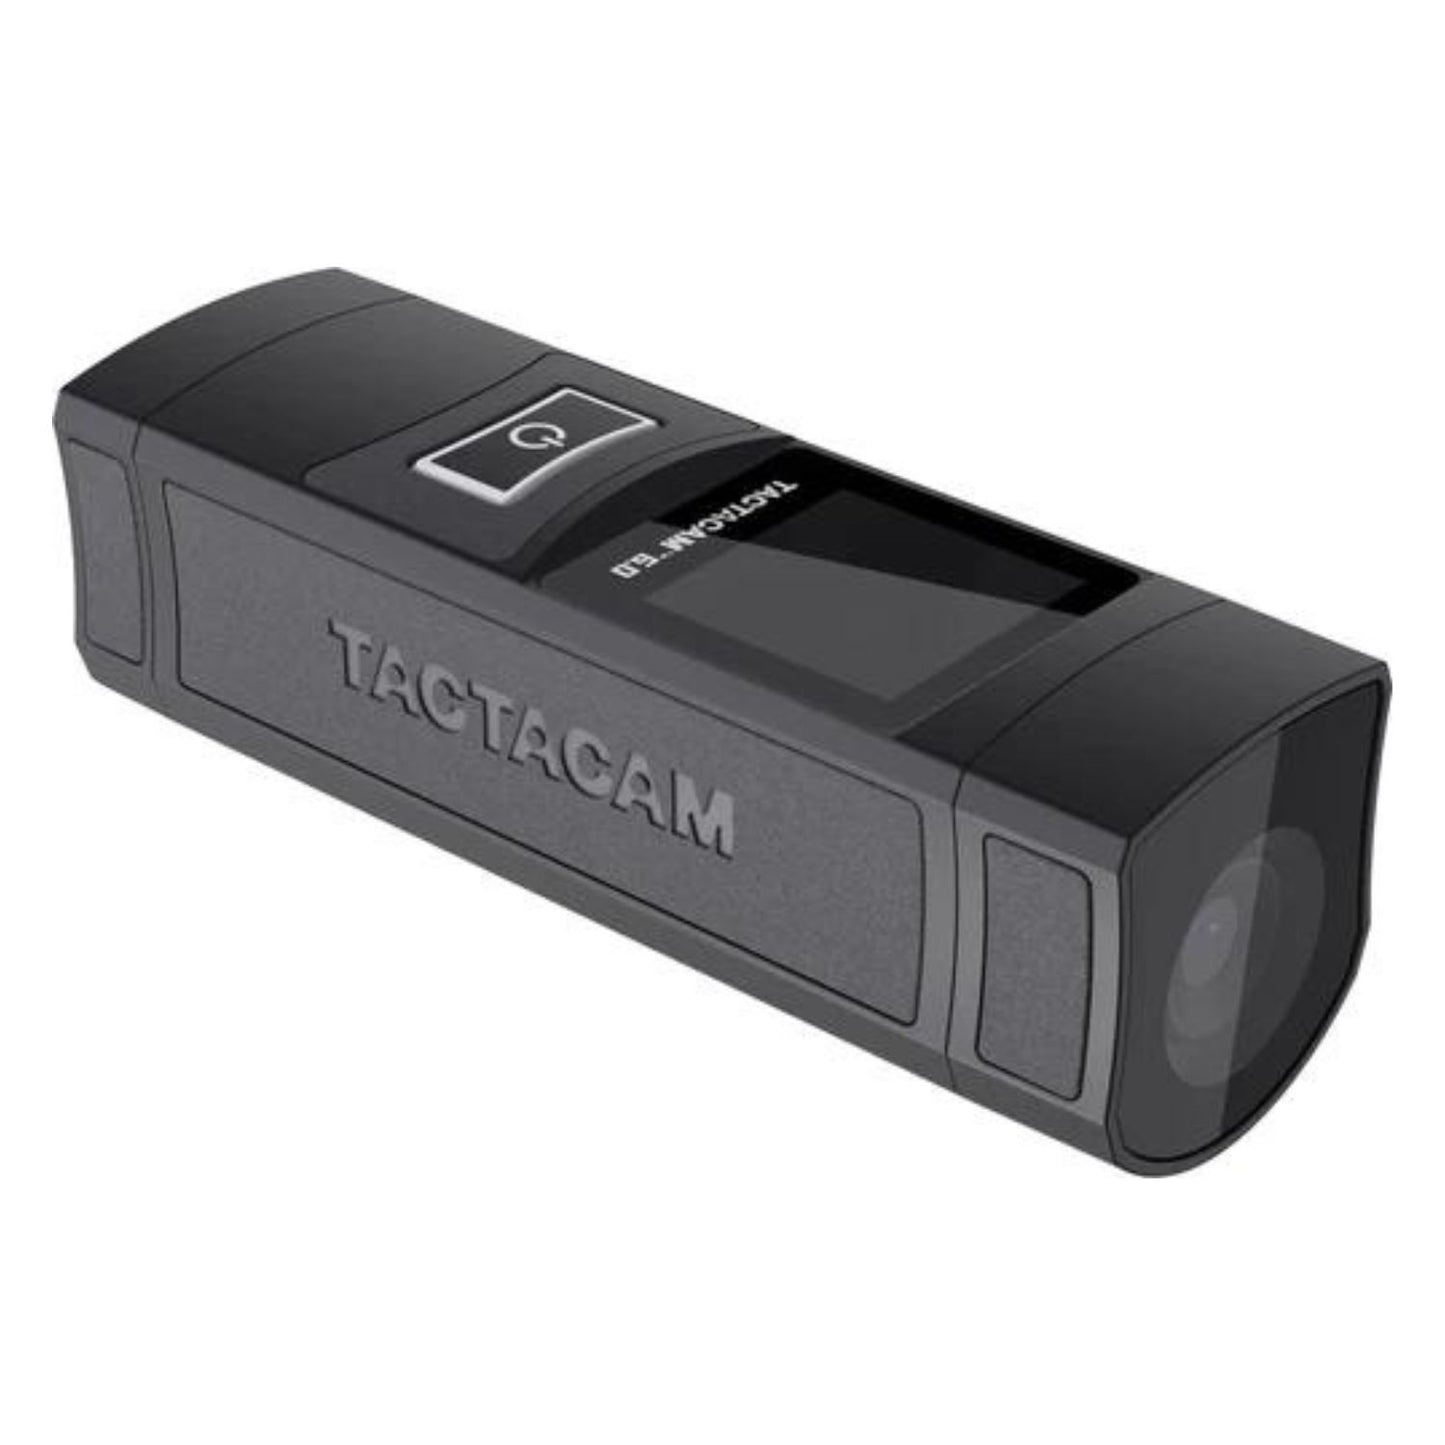 Tactacam 6.0 Action Camera